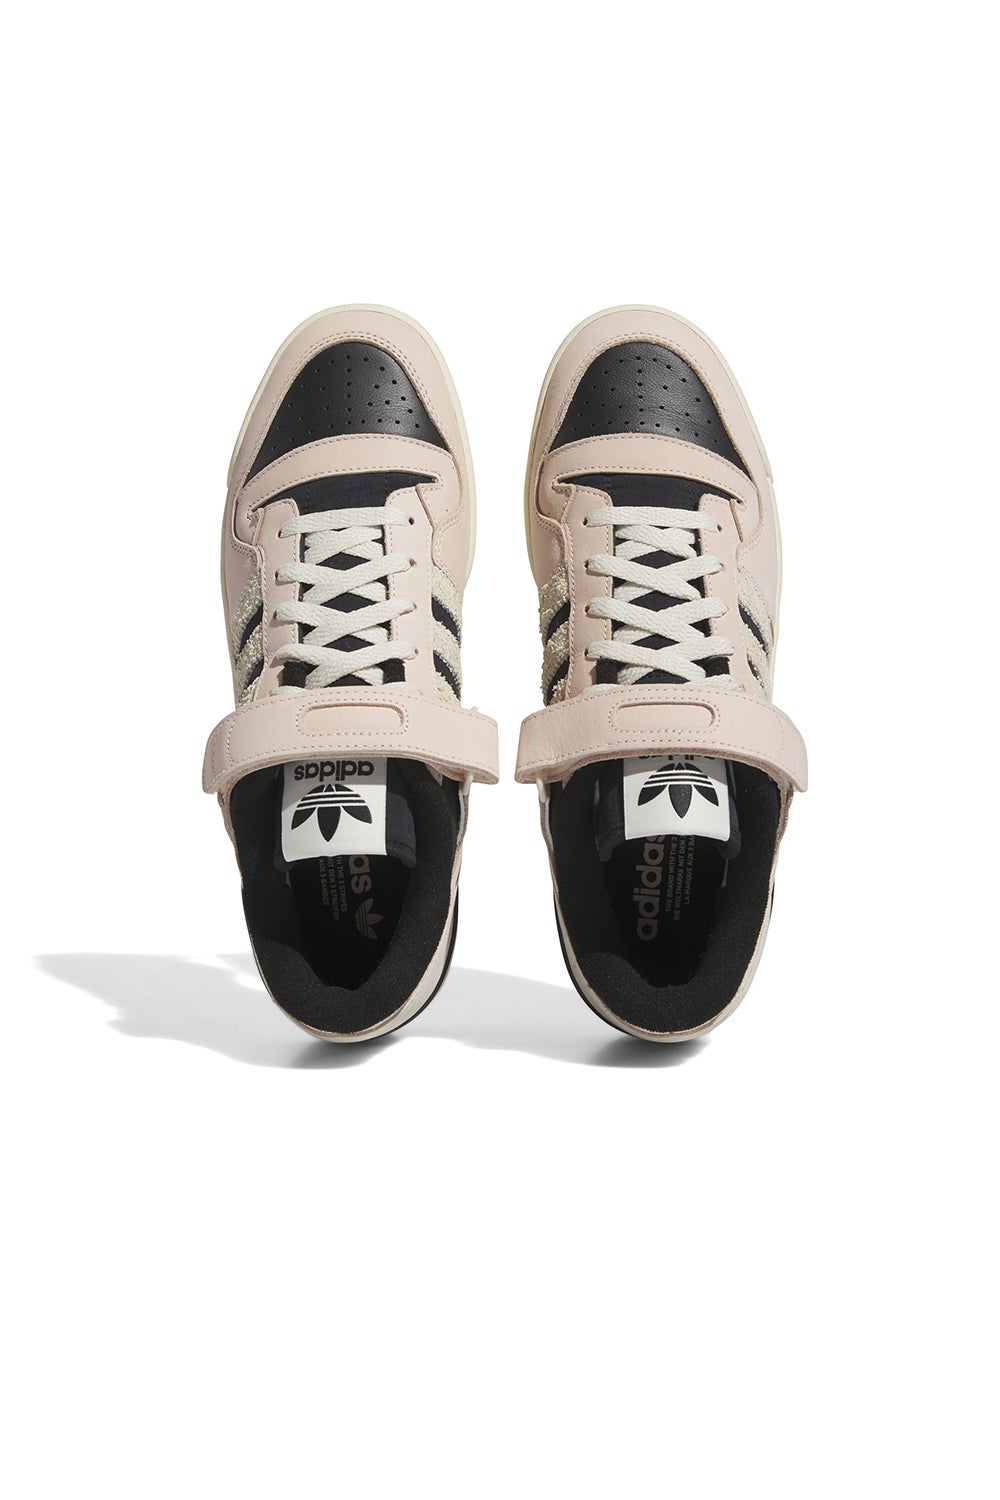 Adidas Forum 84 Low Shoes Wonder Quartz/off White/core Black 